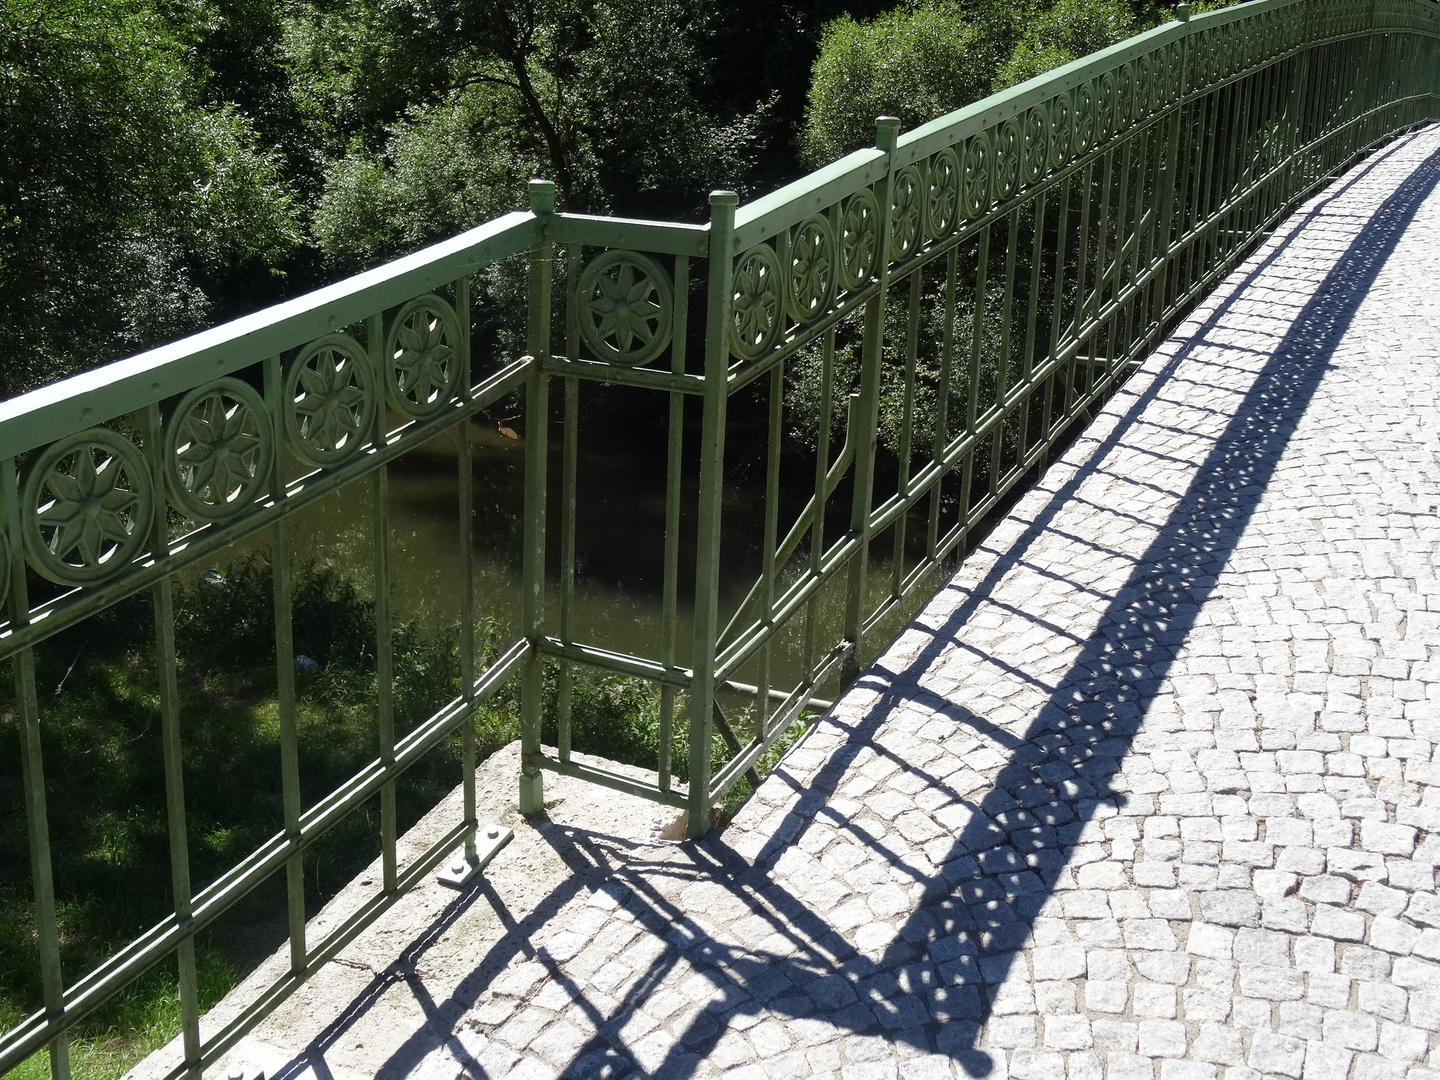 Brücke über die Werra